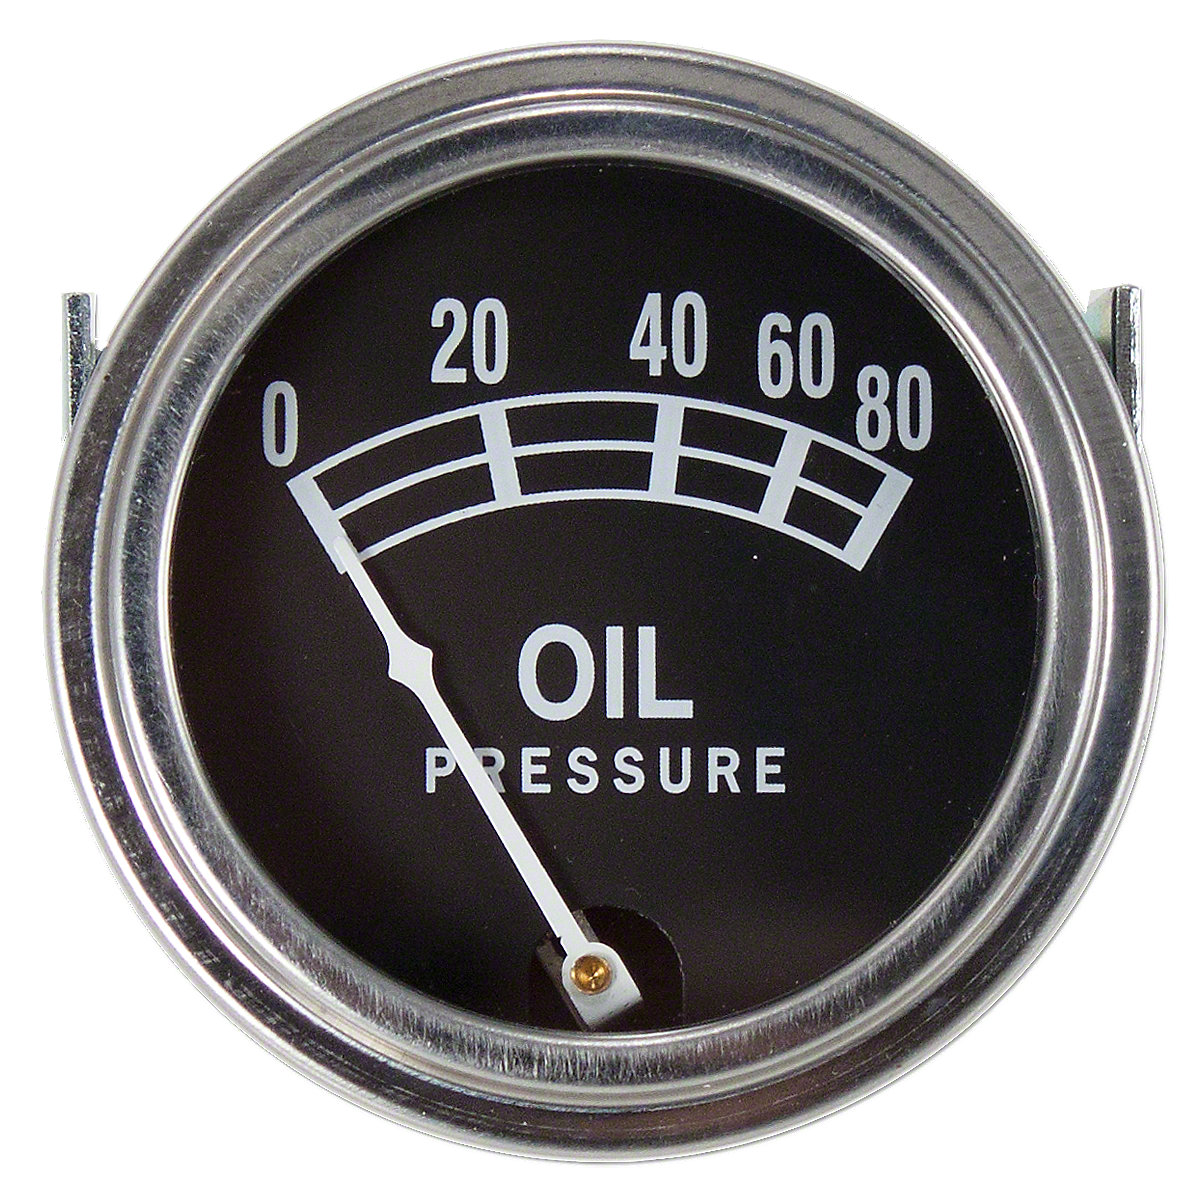 Oil Pressure Gauge - 0-80lbs